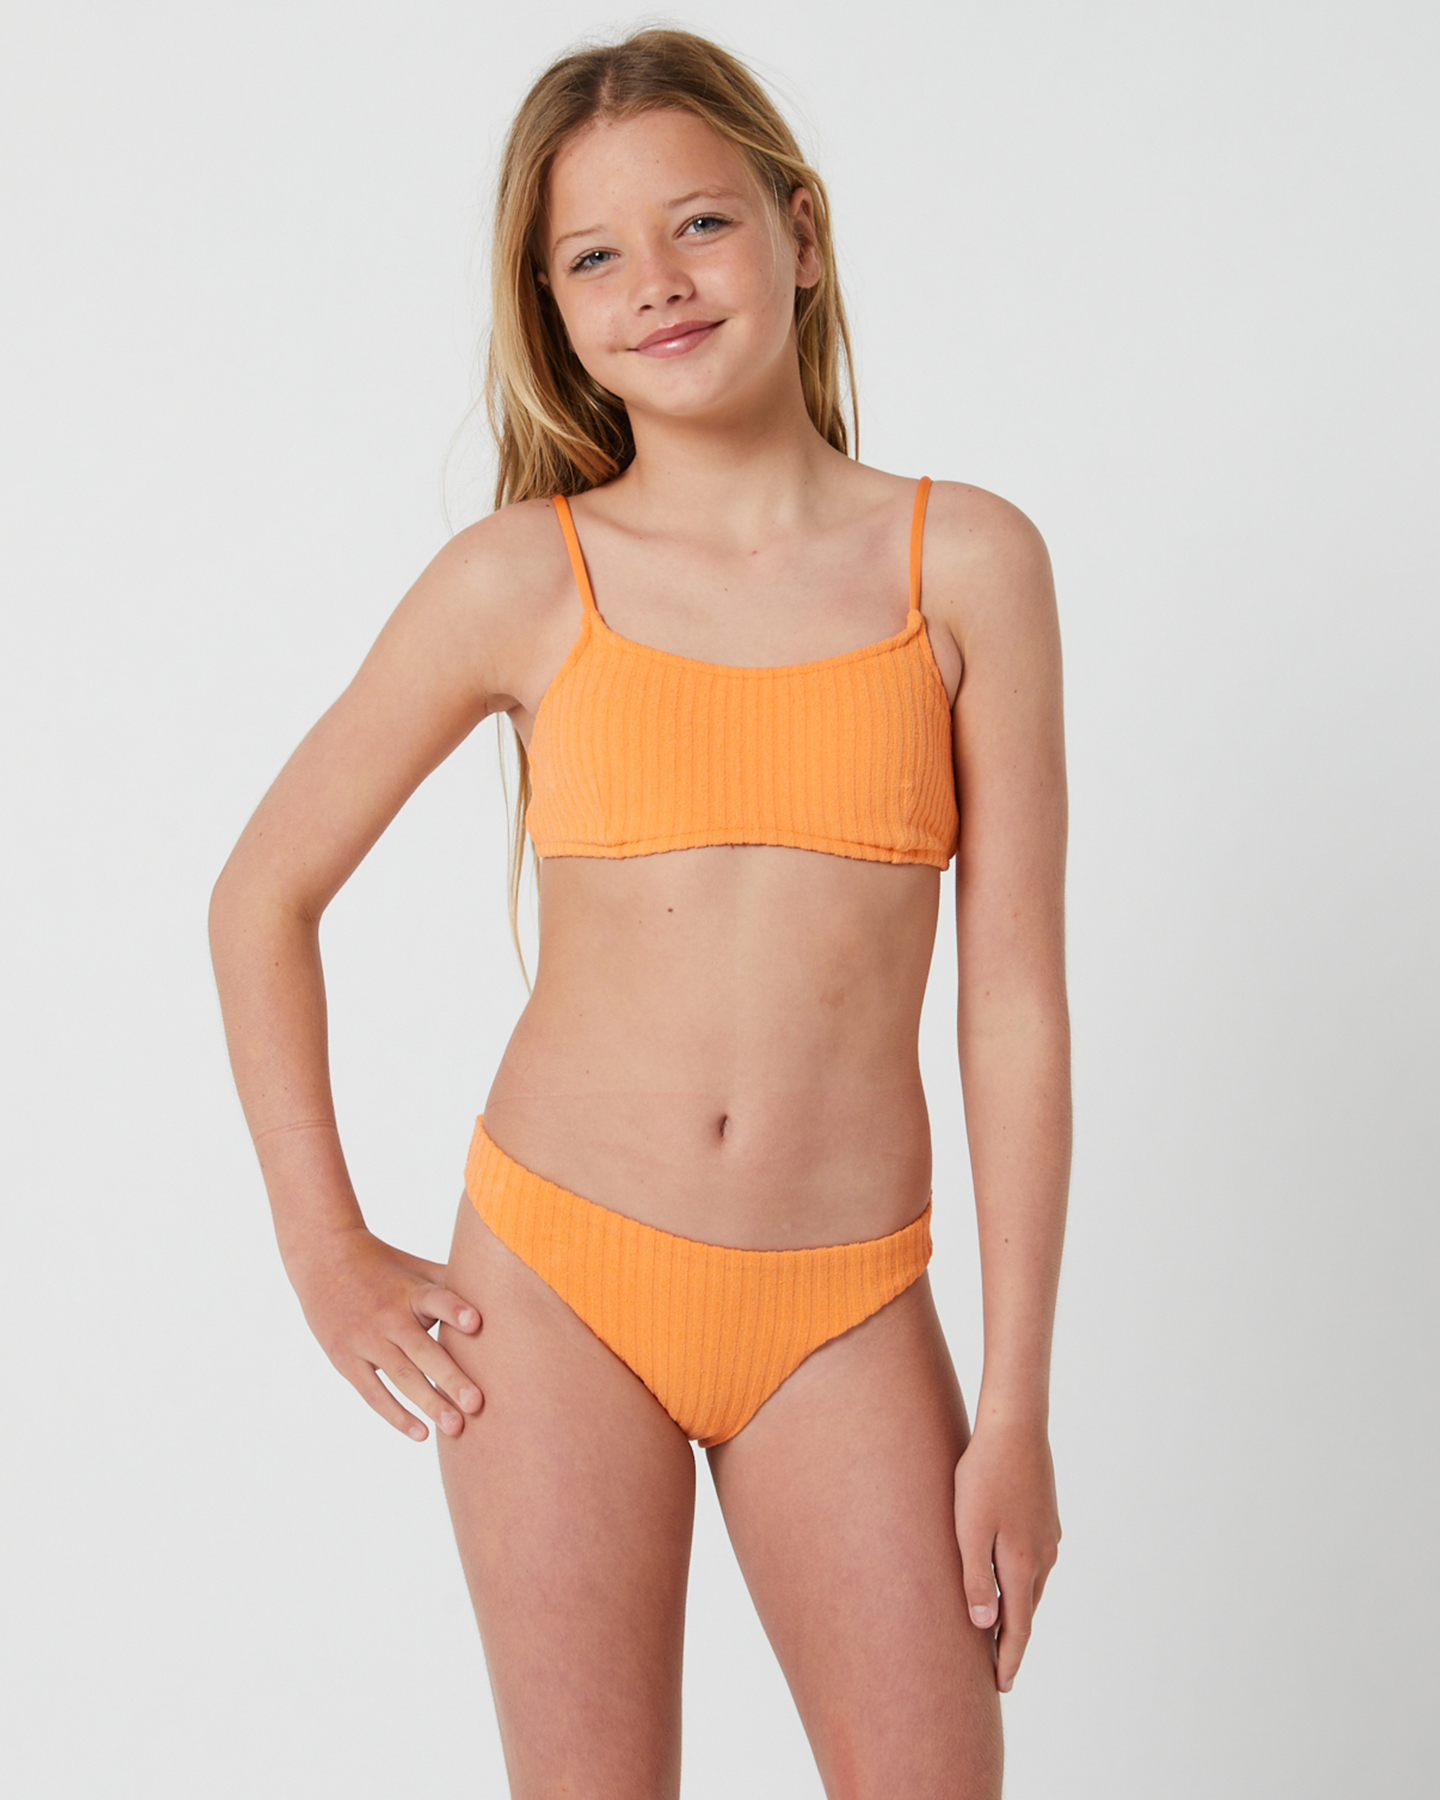 Lucky Brand Yellow Swimwear for Girls Sizes (4+)